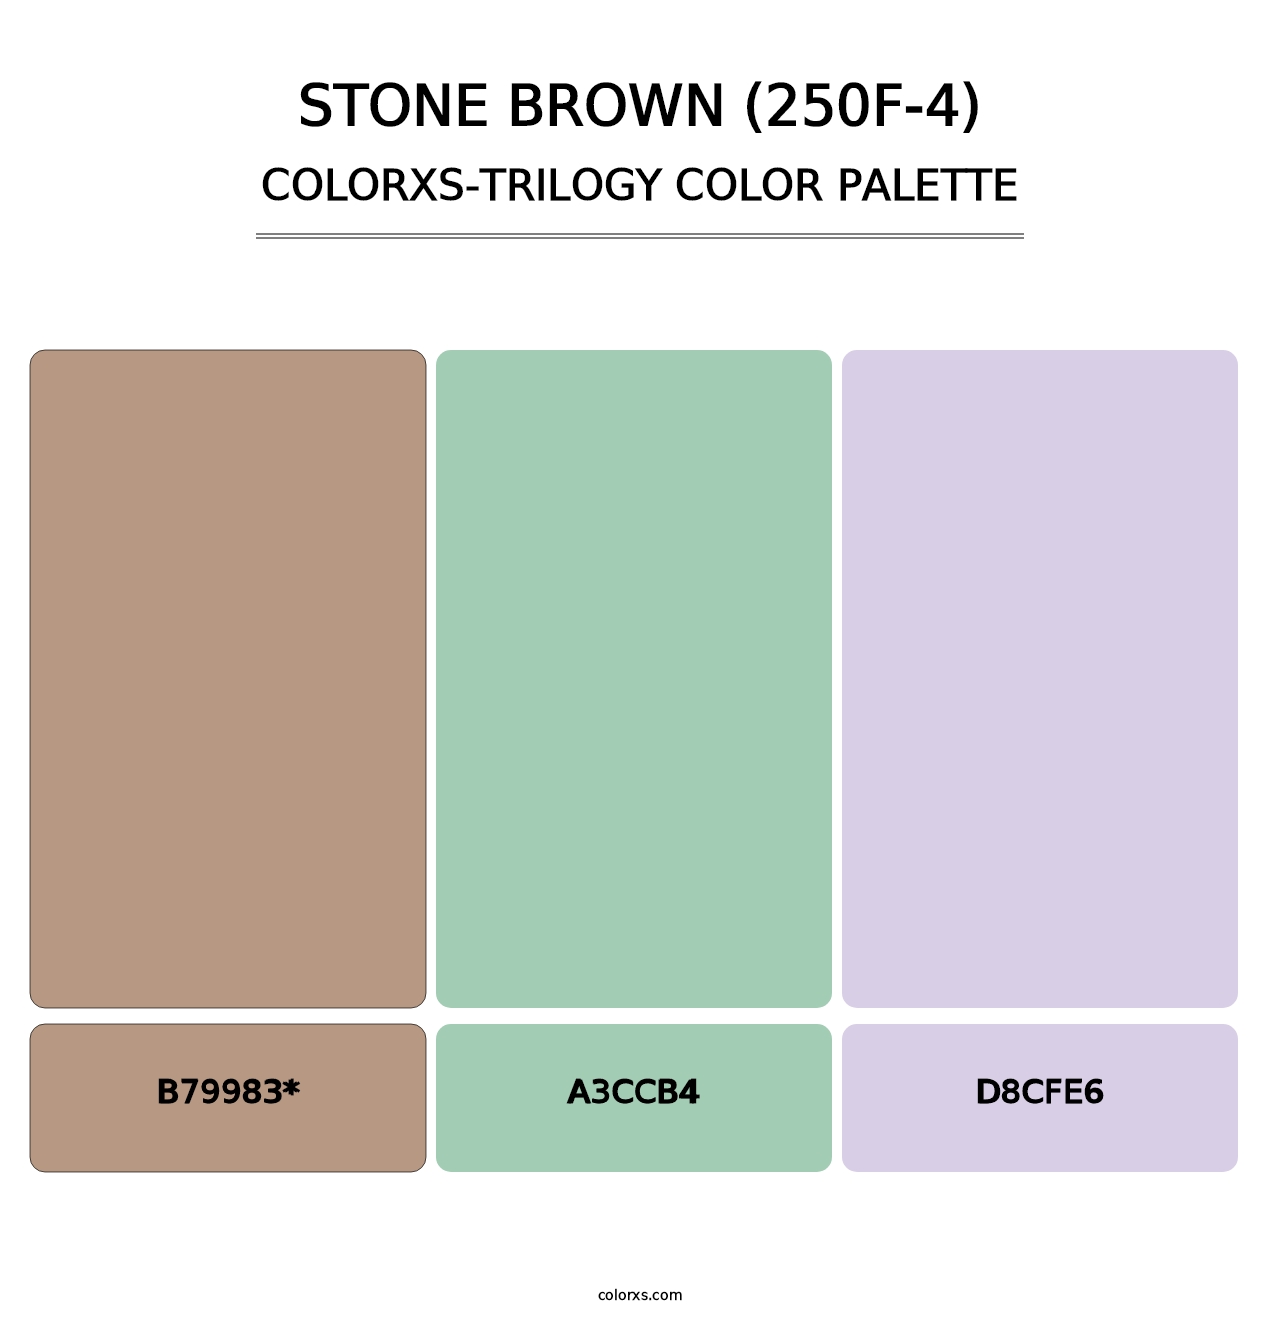 Stone Brown (250F-4) - Colorxs Trilogy Palette